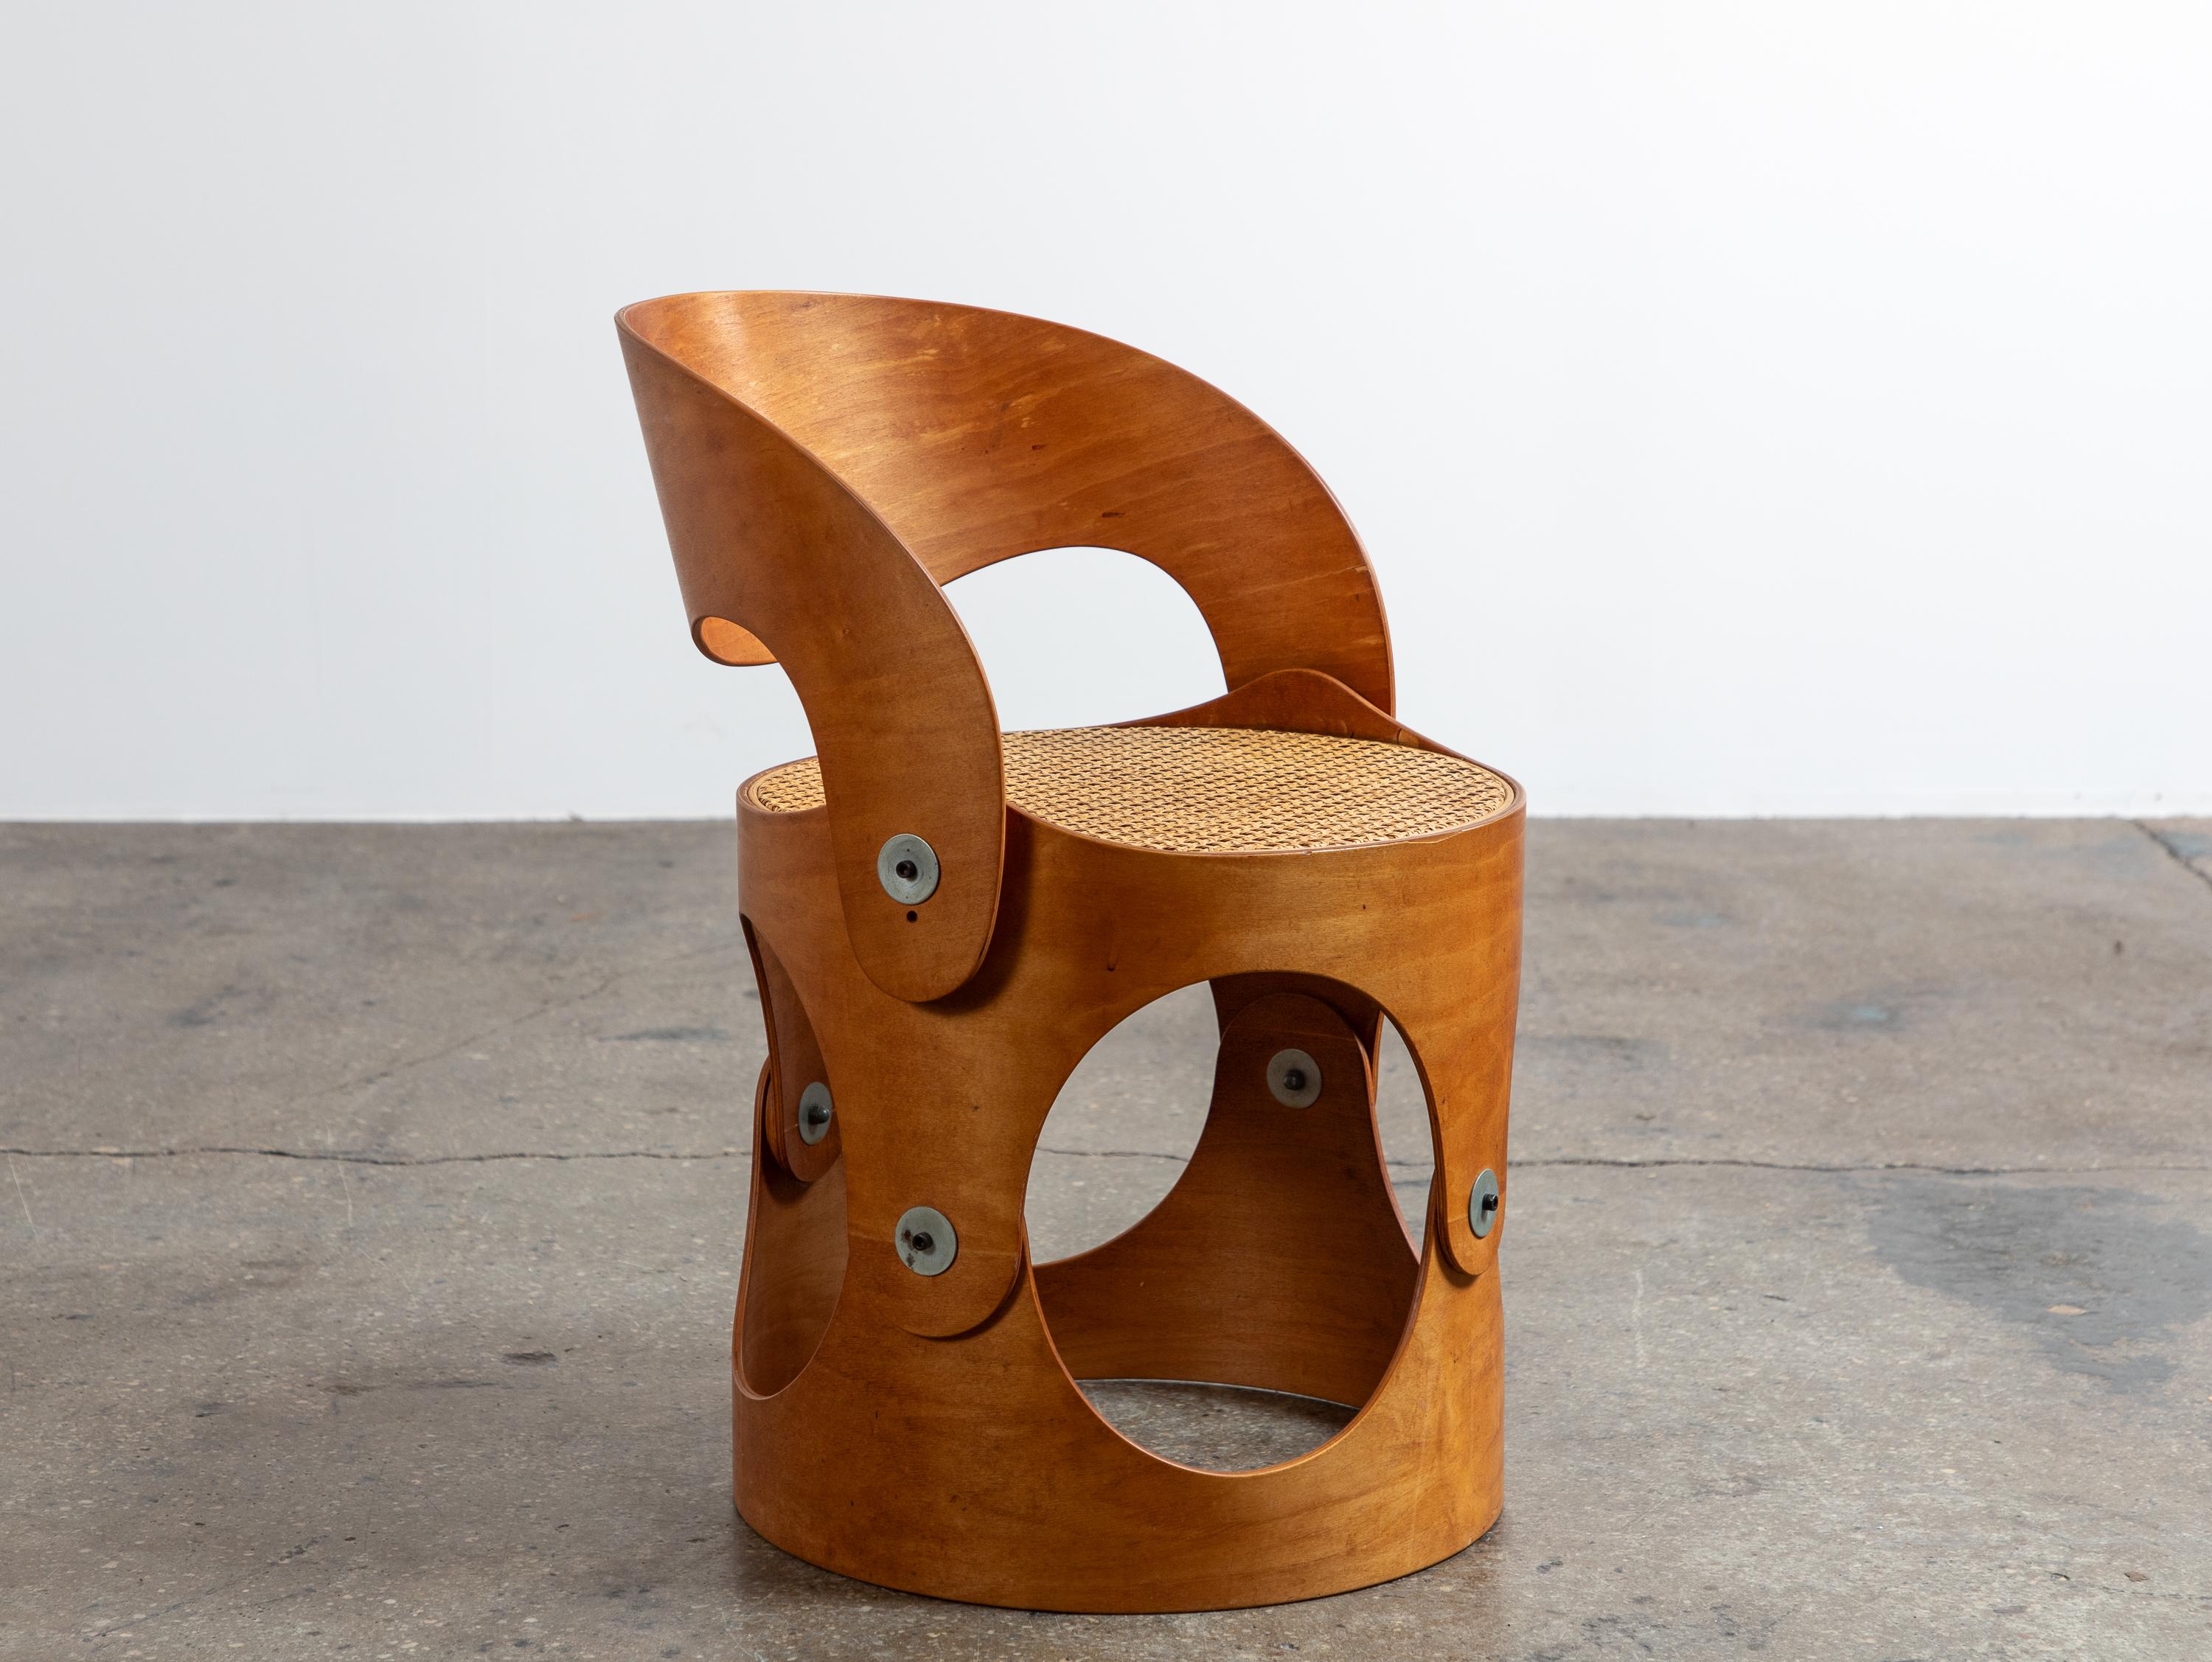 Chaise moderniste en contreplaqué cintré avec assise en cannage tressé, conçue par l'architecte Leandre Poisson. La chaise est composée de structures incurvées en contreplaqué, reliées par des ferrures apparentes et finies par une assise en rotin